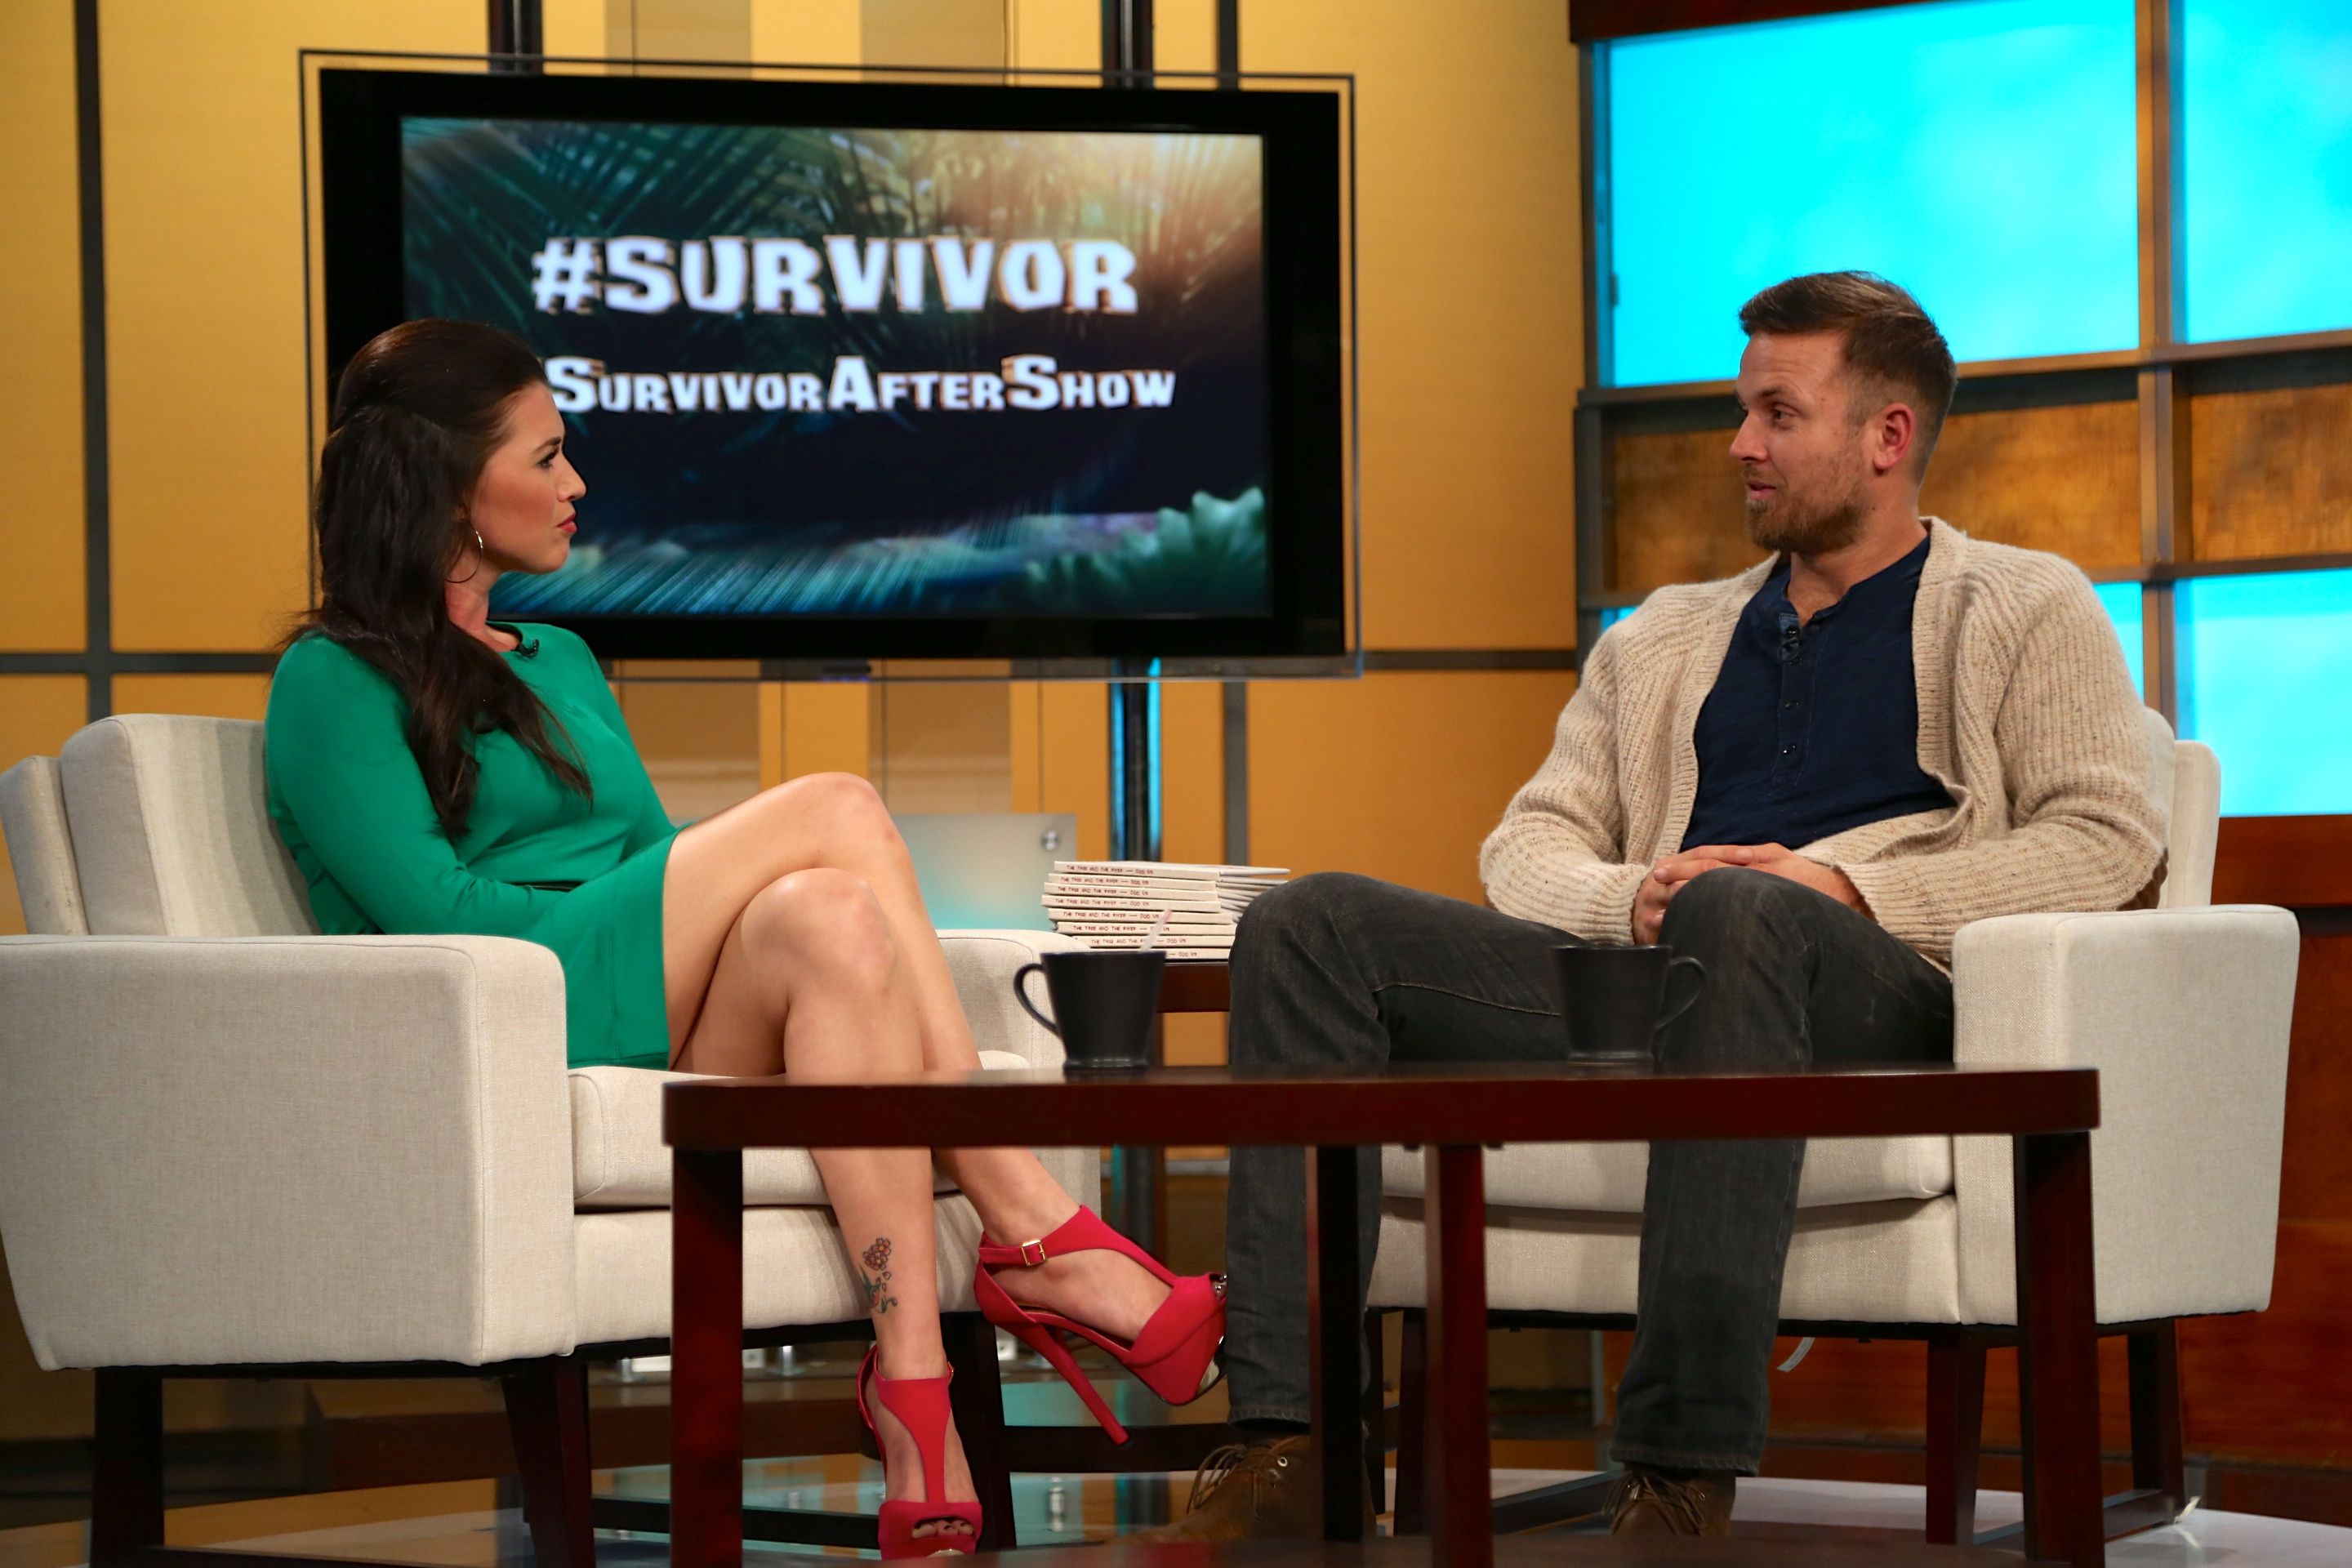 Survivor After Show Photos - Survivor Photos - CBS.com